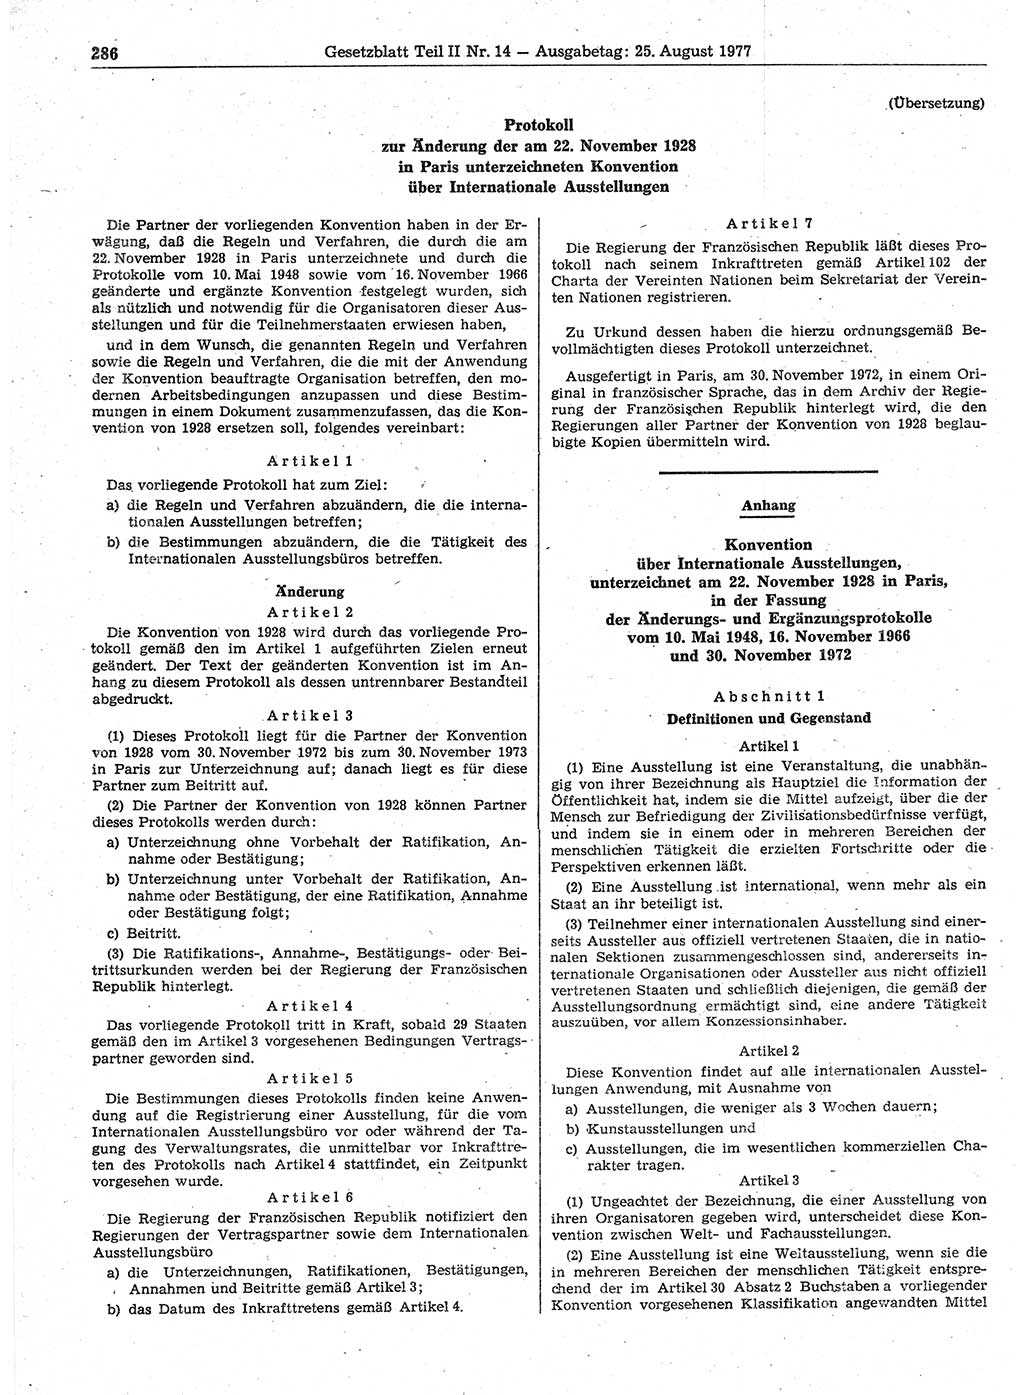 Gesetzblatt (GBl.) der Deutschen Demokratischen Republik (DDR) Teil ⅠⅠ 1977, Seite 286 (GBl. DDR ⅠⅠ 1977, S. 286)